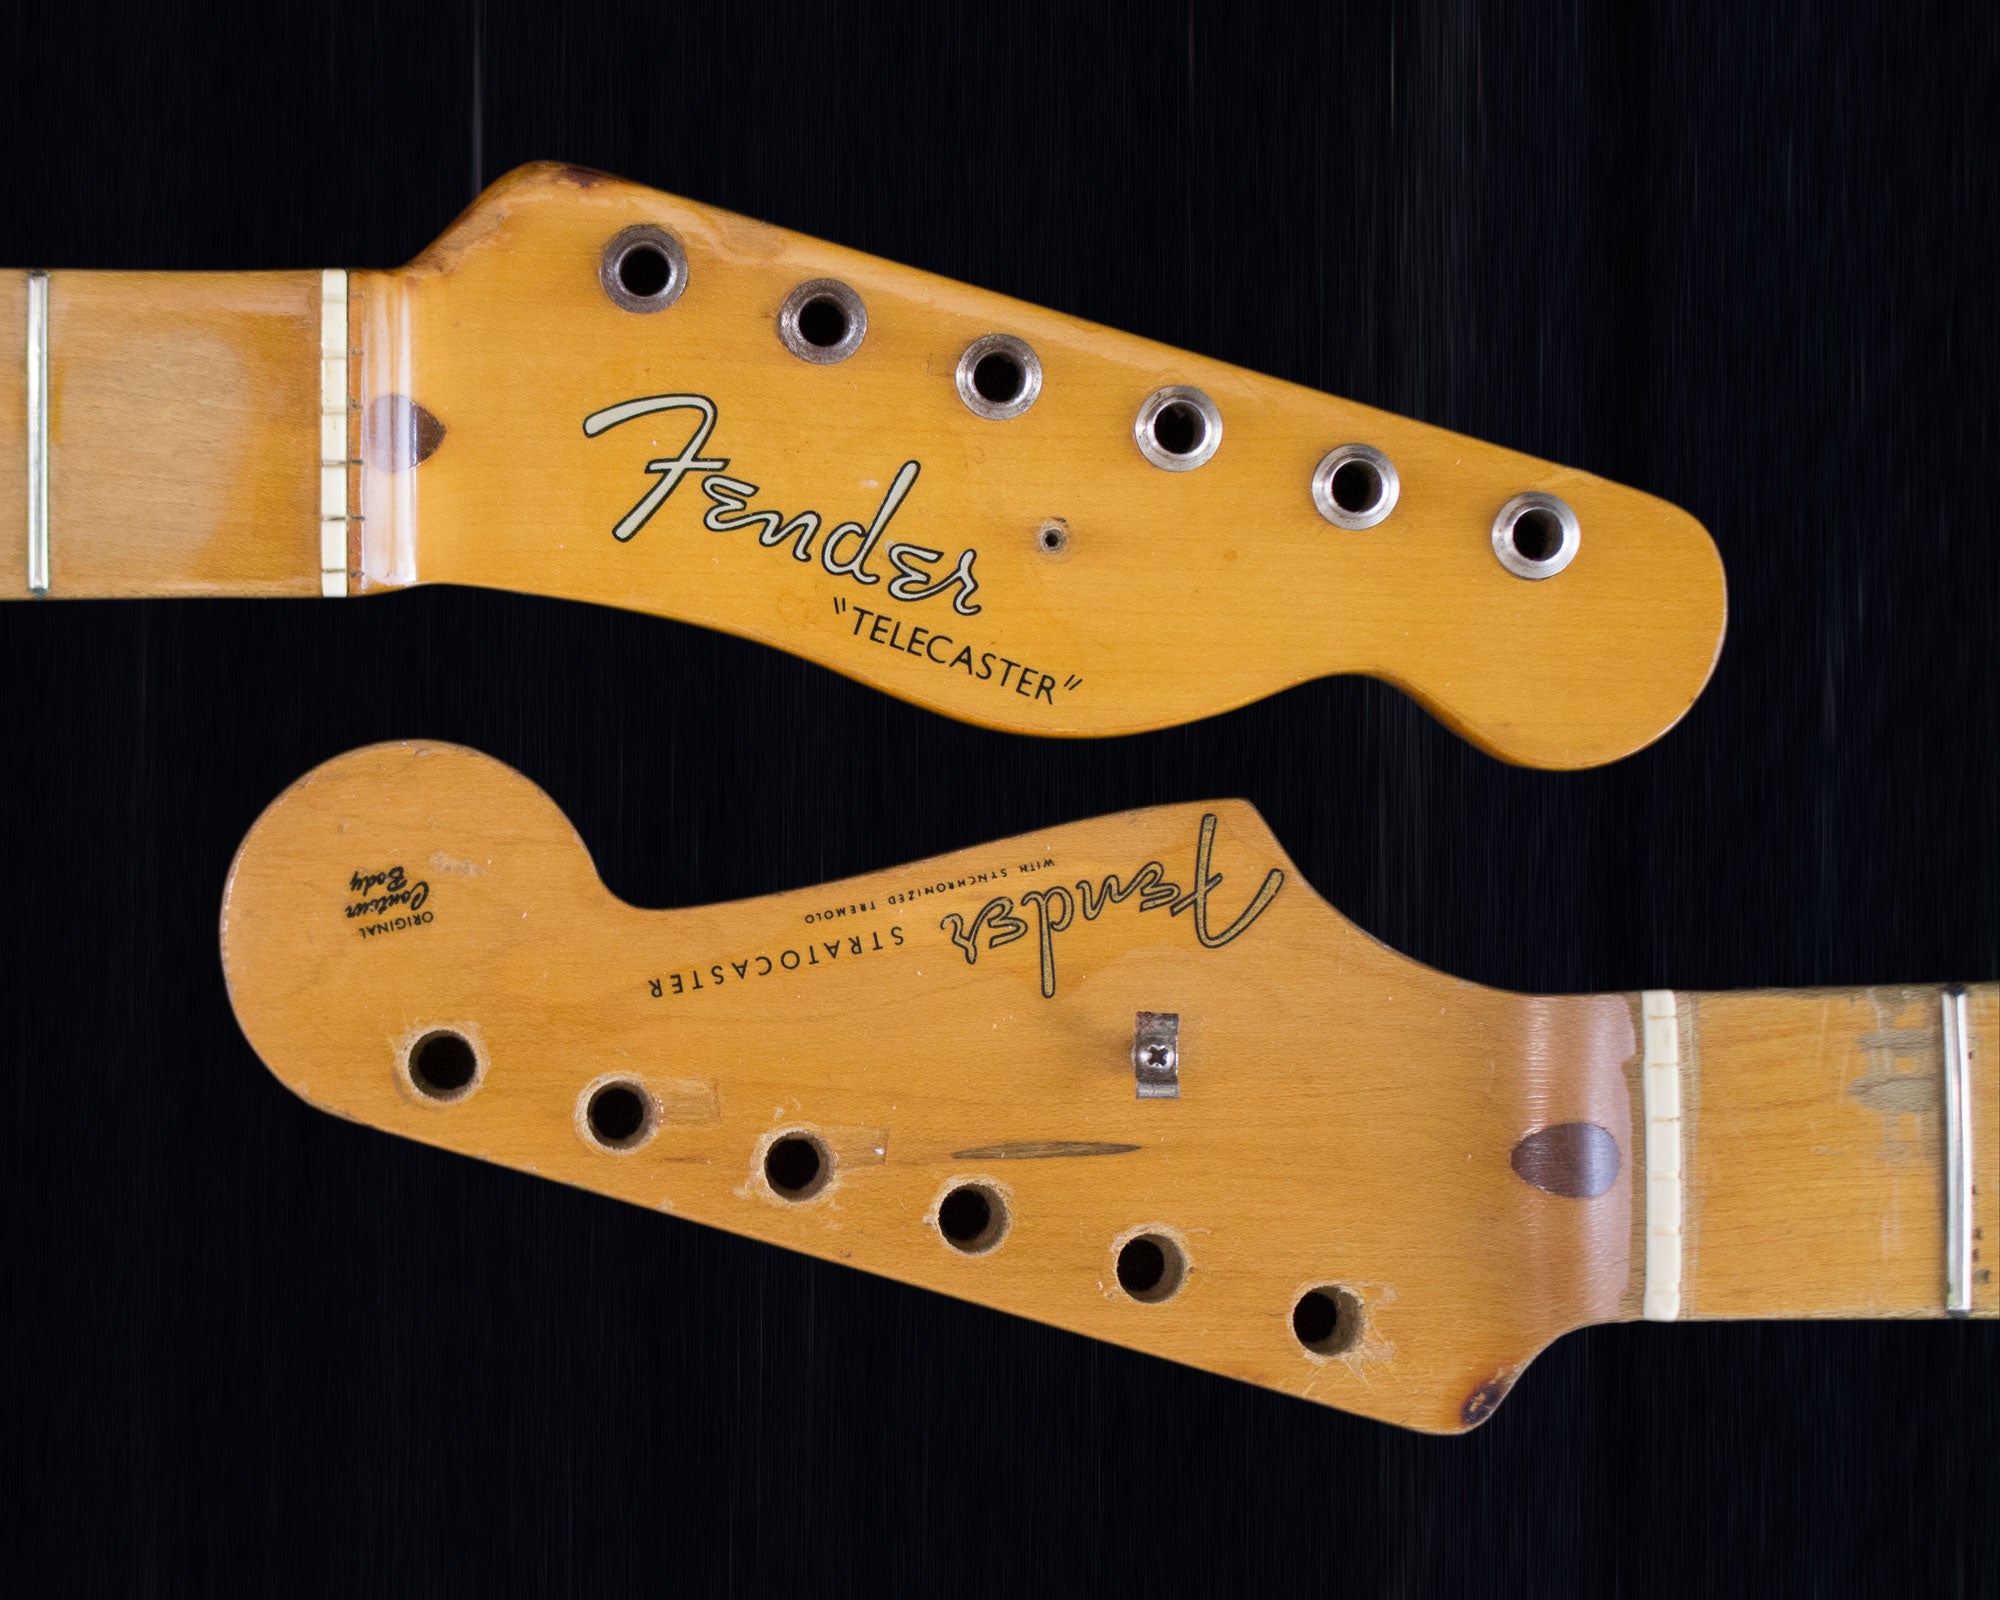 Fender headstock detail